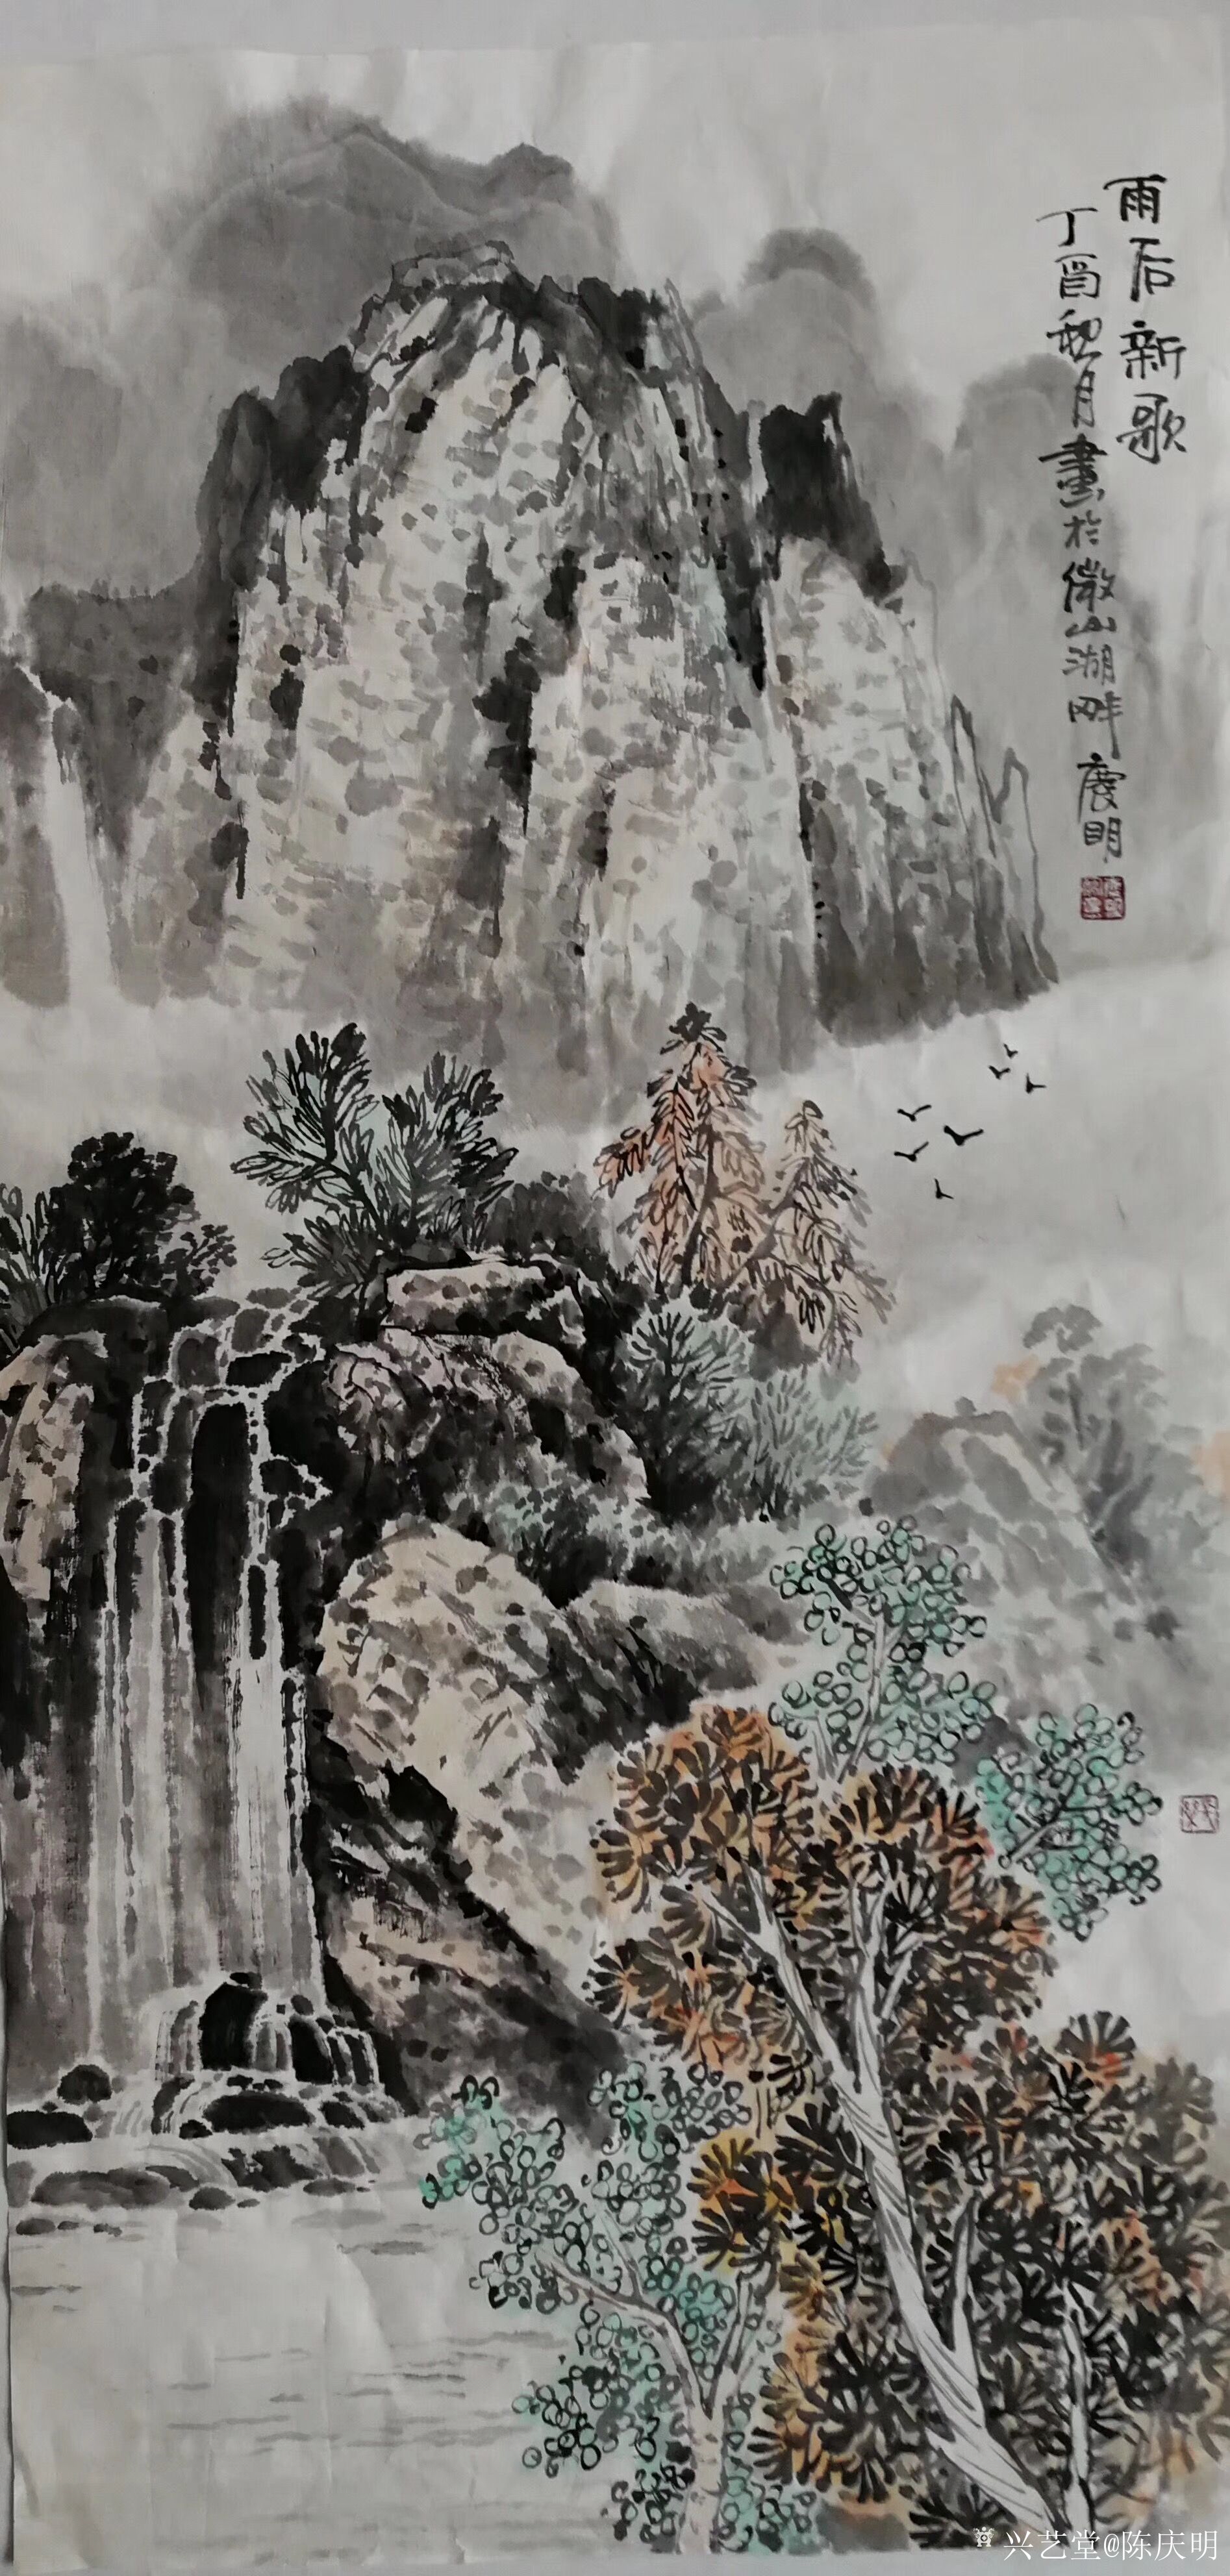 陈庆明日记:三尺山水画,《雨后新歌》,《清